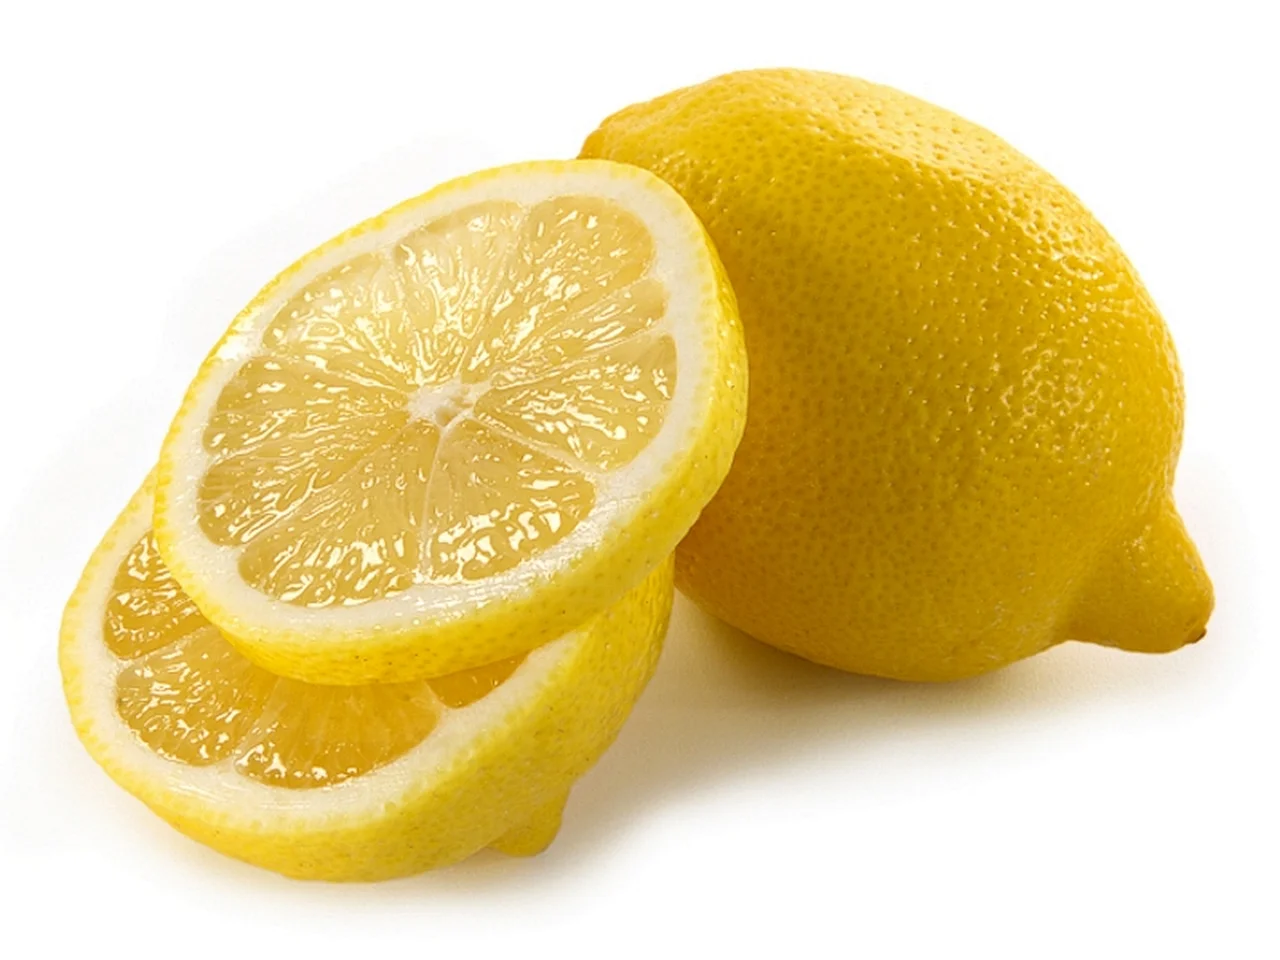  Dobra rada jeżeli potrzebujesz soku z cytryny